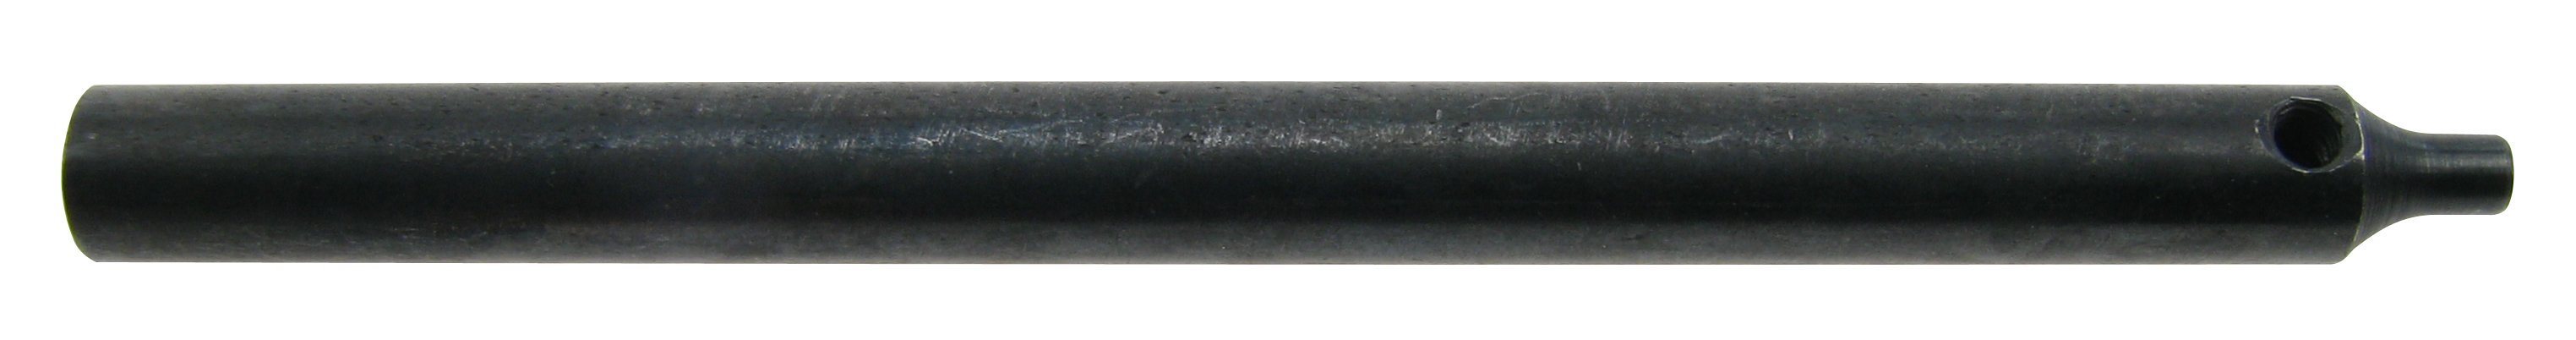 Dornhaltebrosche für Dorn 0,8 mm für Stiftentferner 4229120 Flume